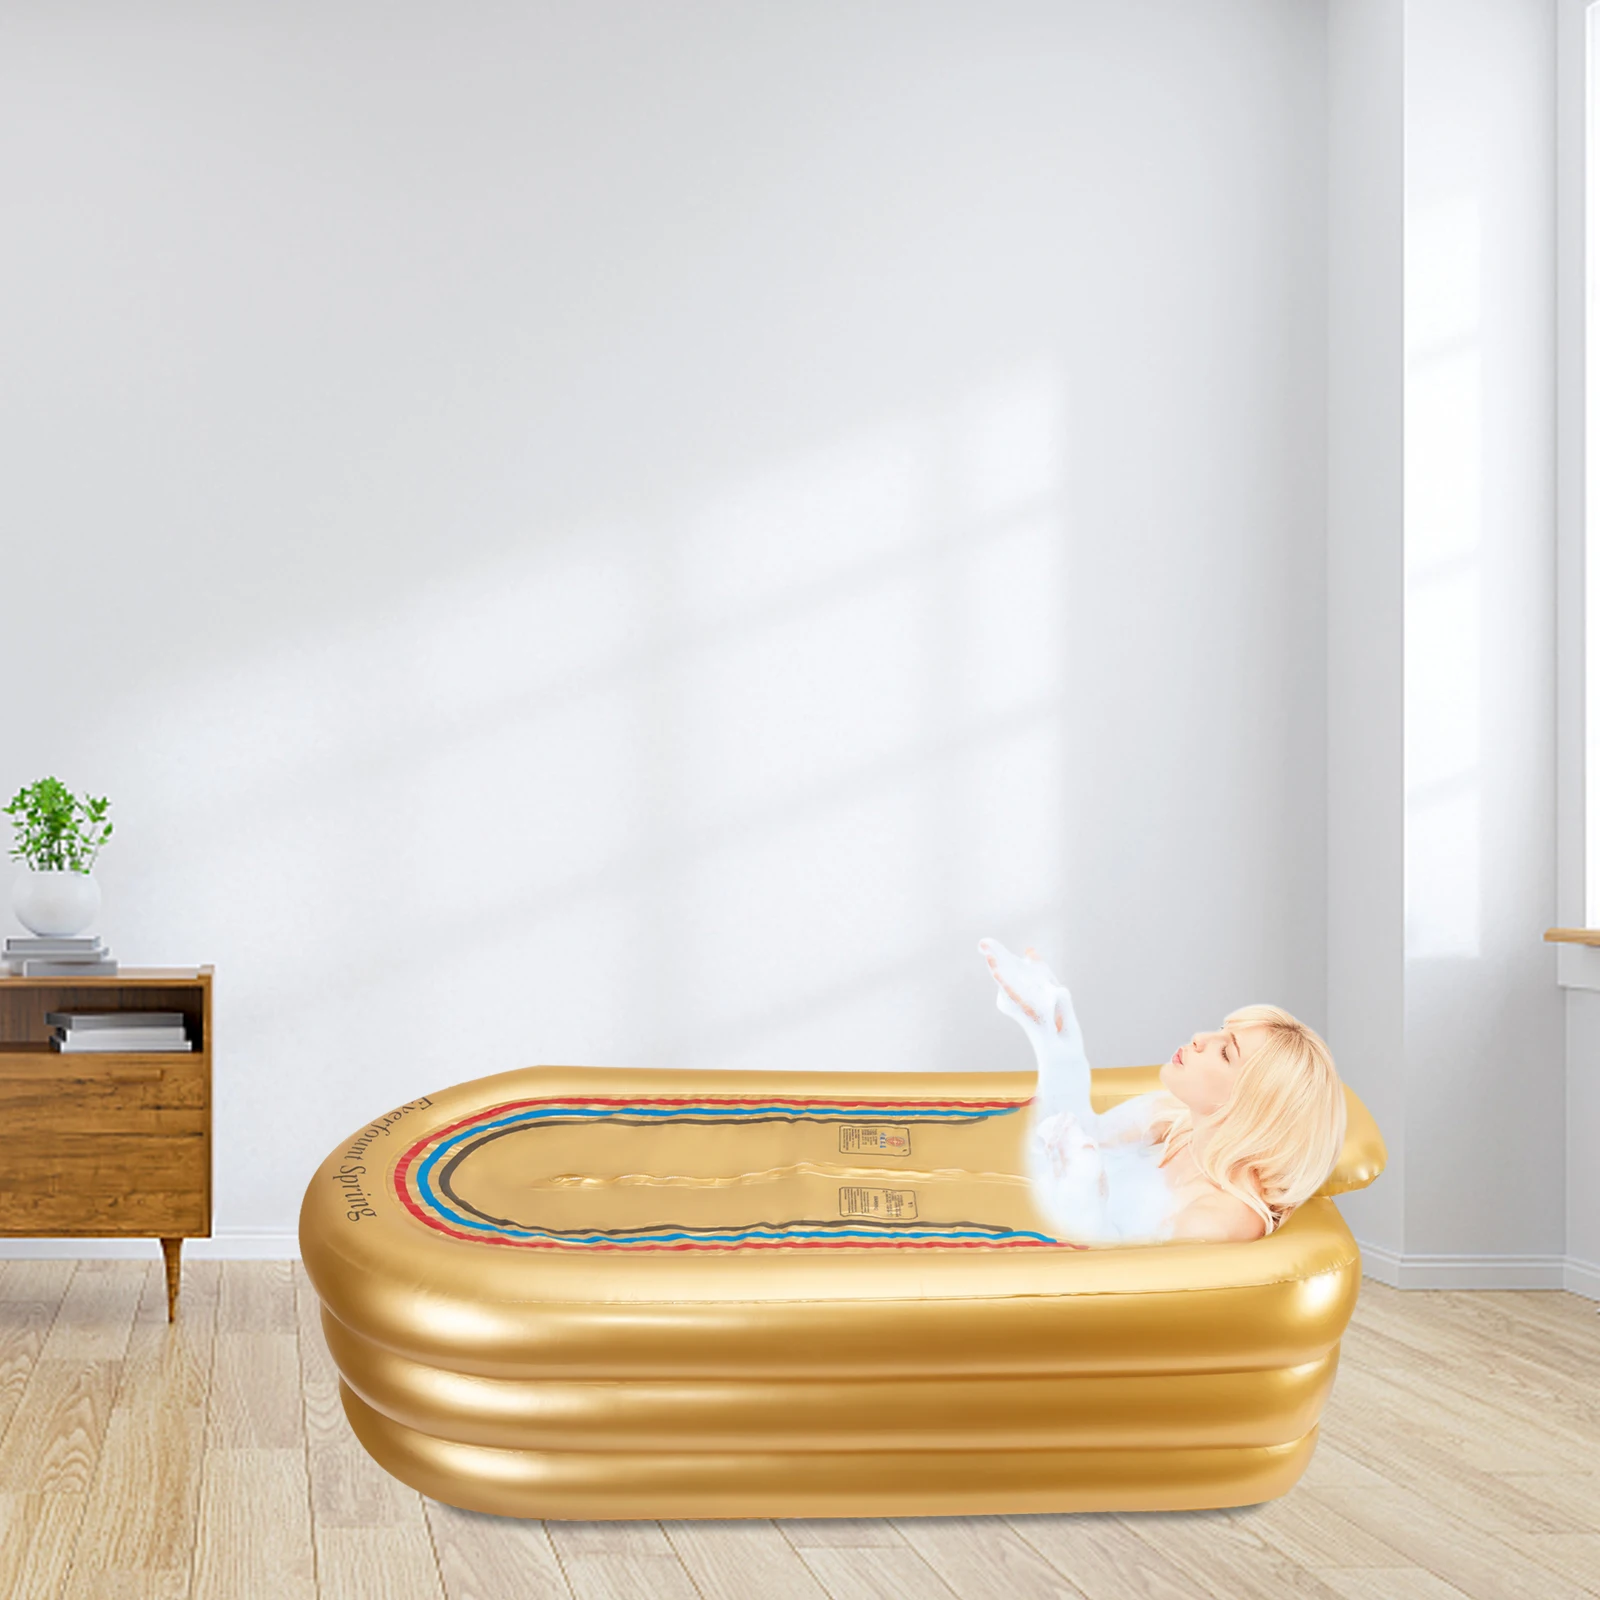 Надувная ванна для взрослых портативная отдельно стоящая ванна для плавания Бассейн Сауна Складная гидромассажная ванна, спа-душ с электрическим воздушным насосом   Изображение 3